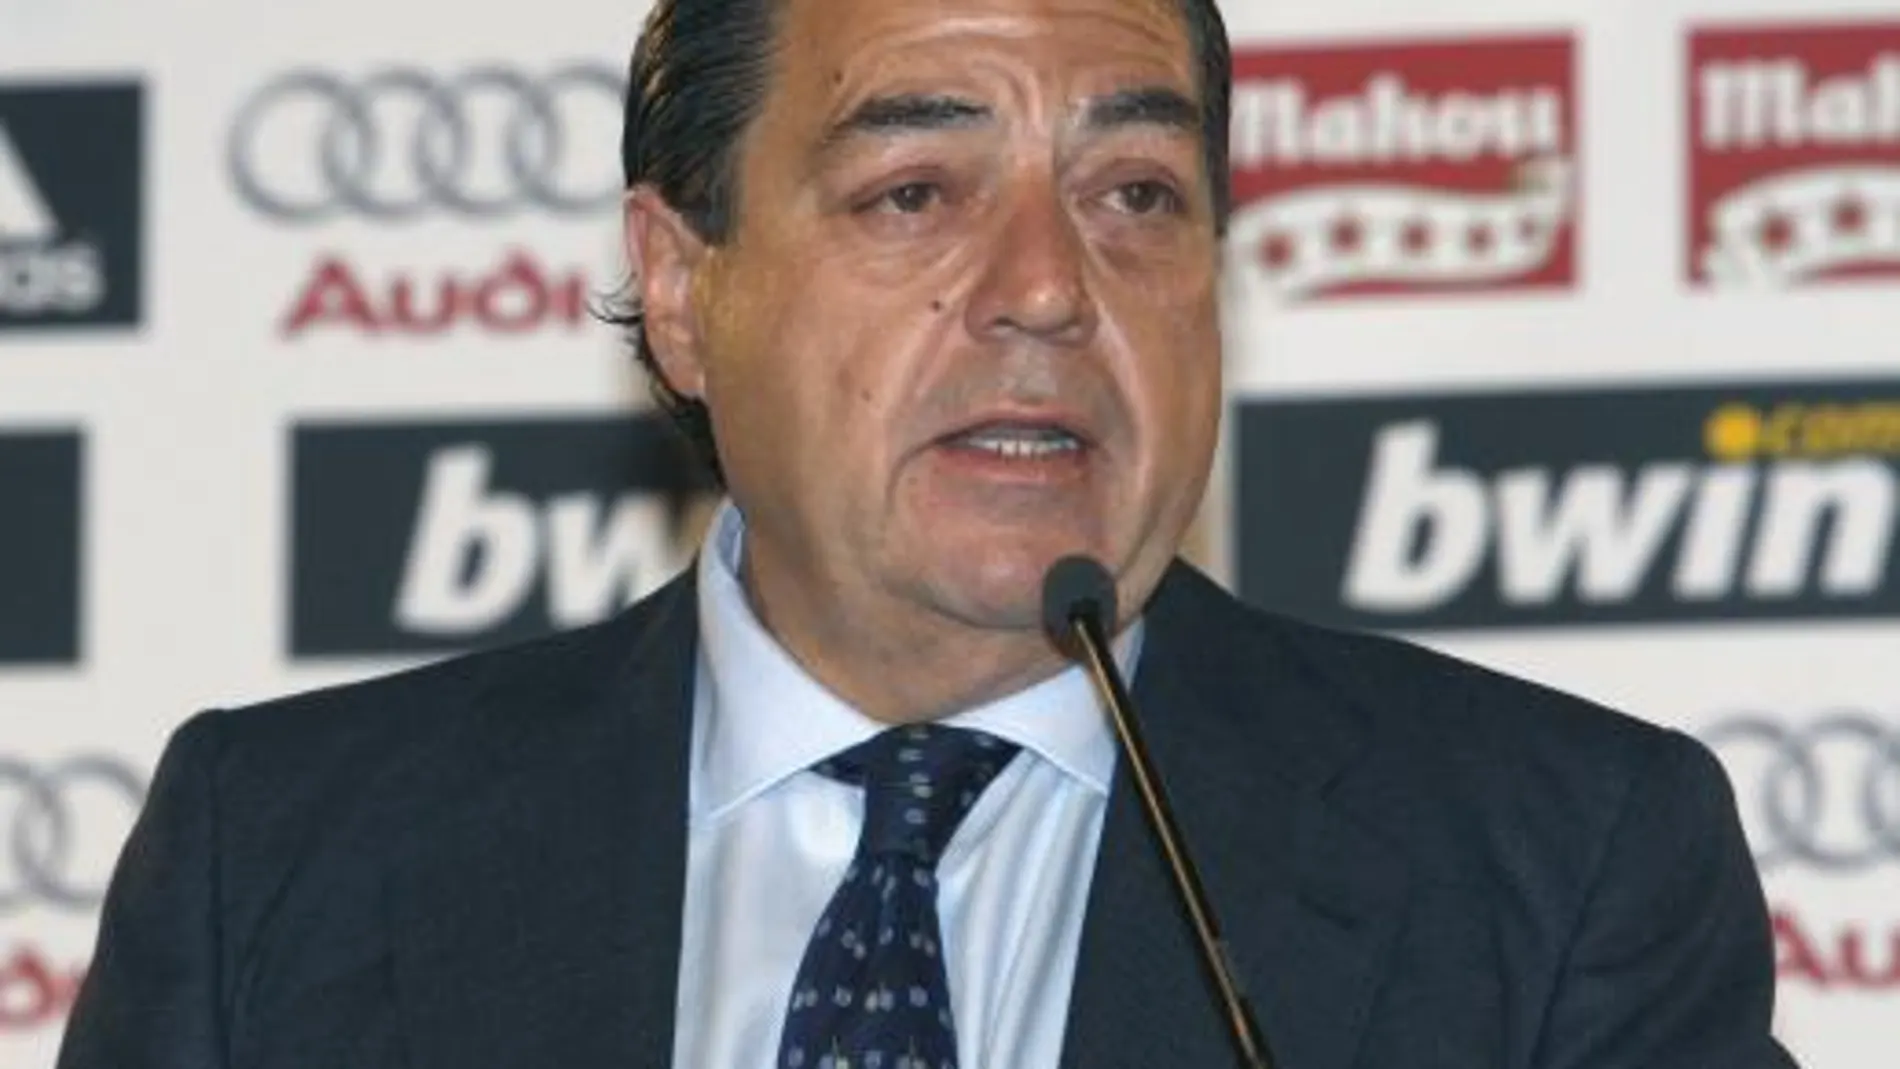 Boluda anuncia las elecciones para el «próximo verano»